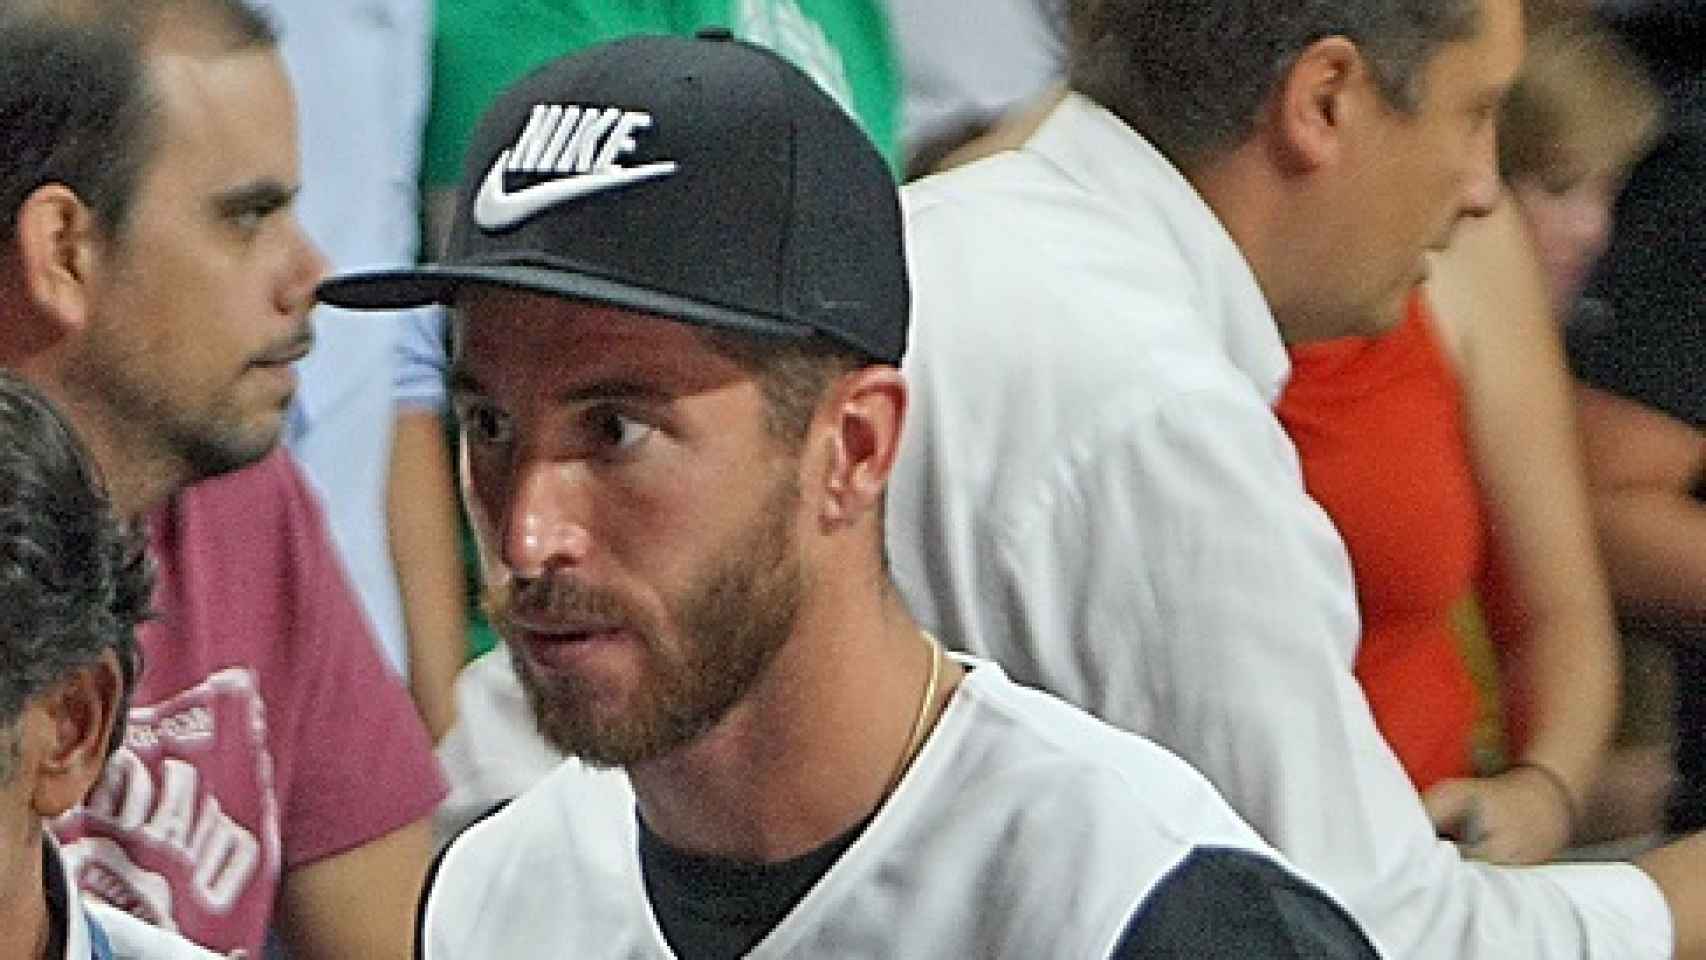 Sergio Ramos con total look de Nike durante el campeonato del mundo de baloncesto